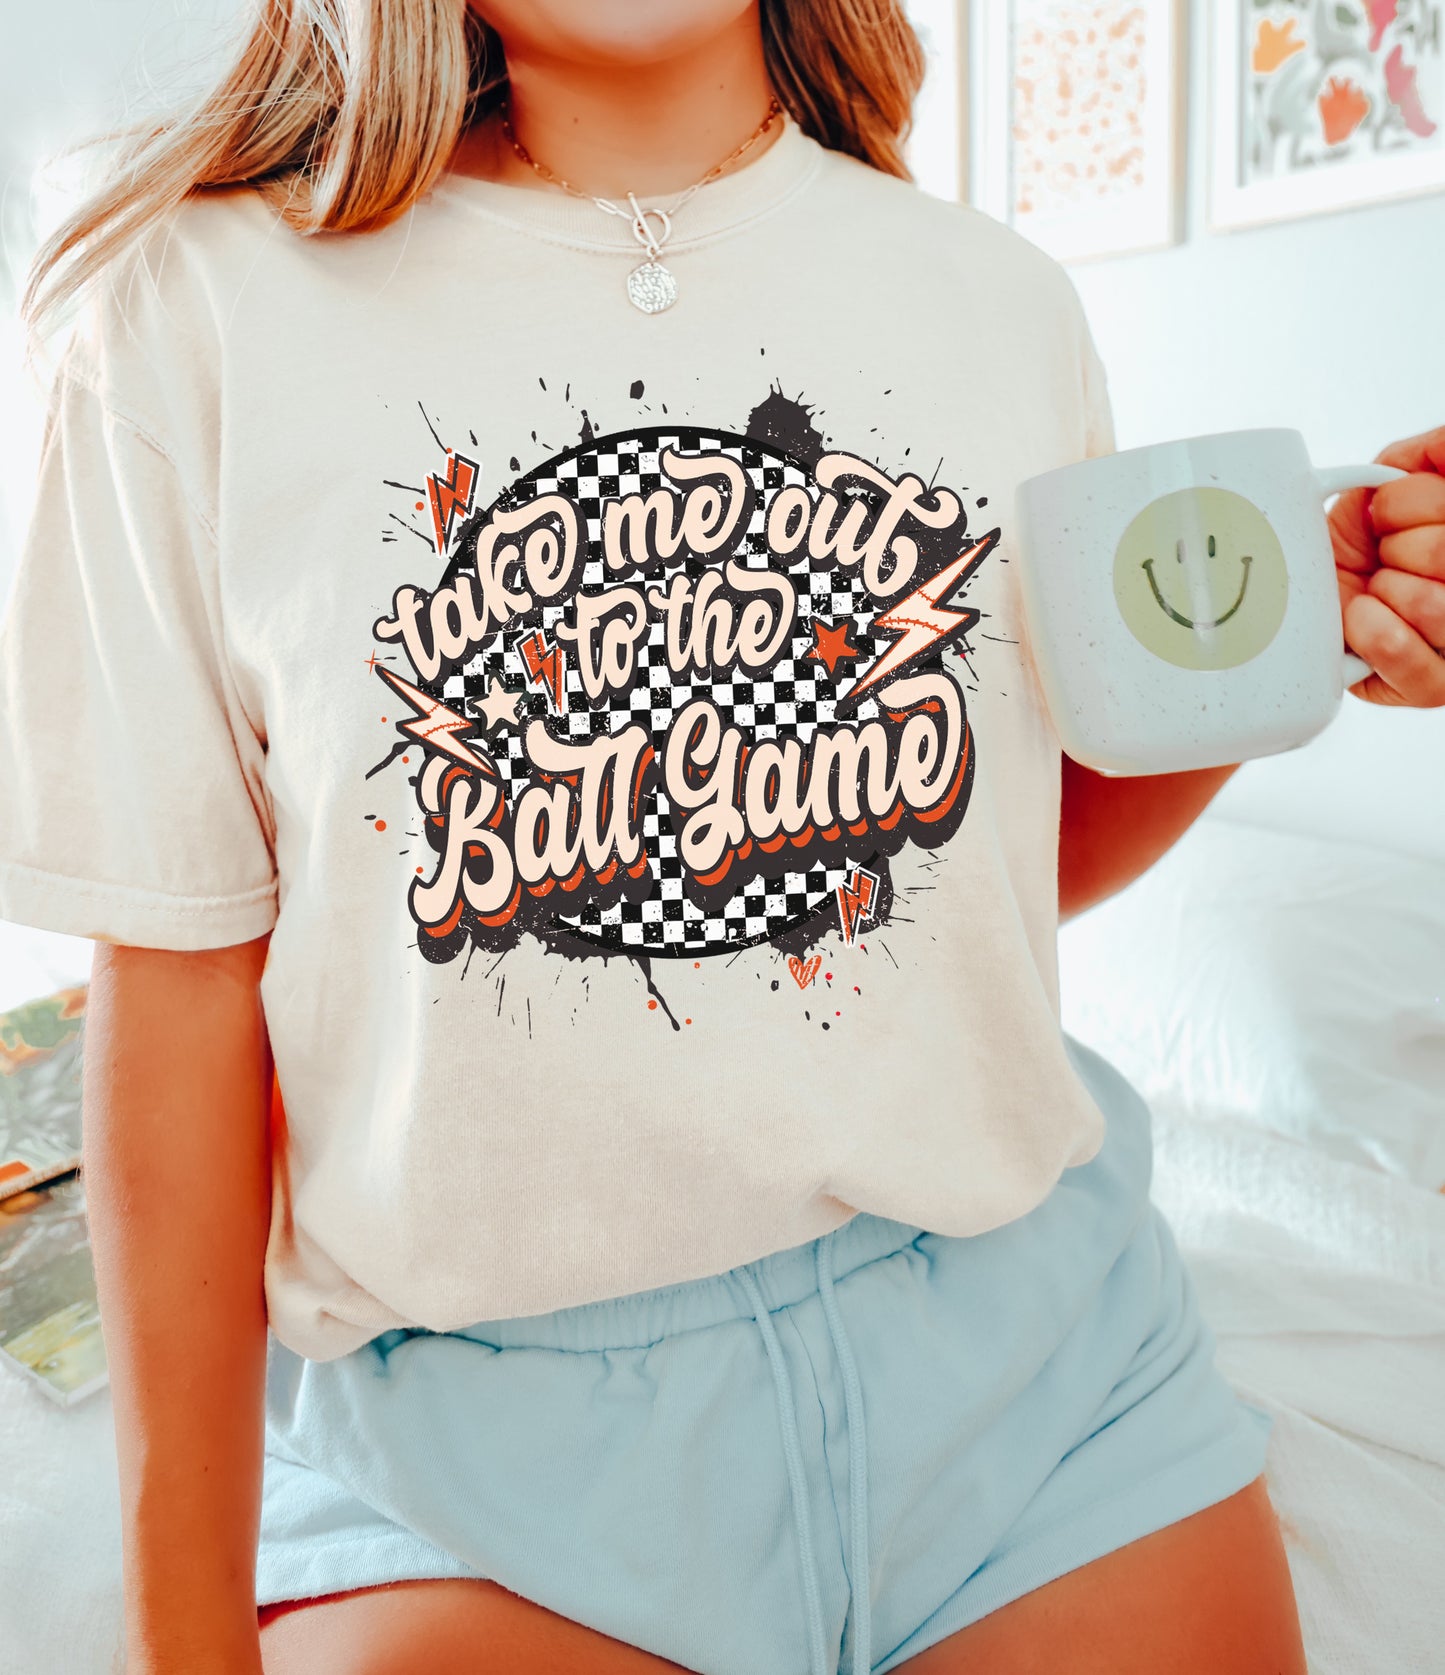 Take Me Out To The Ballgame Shirt